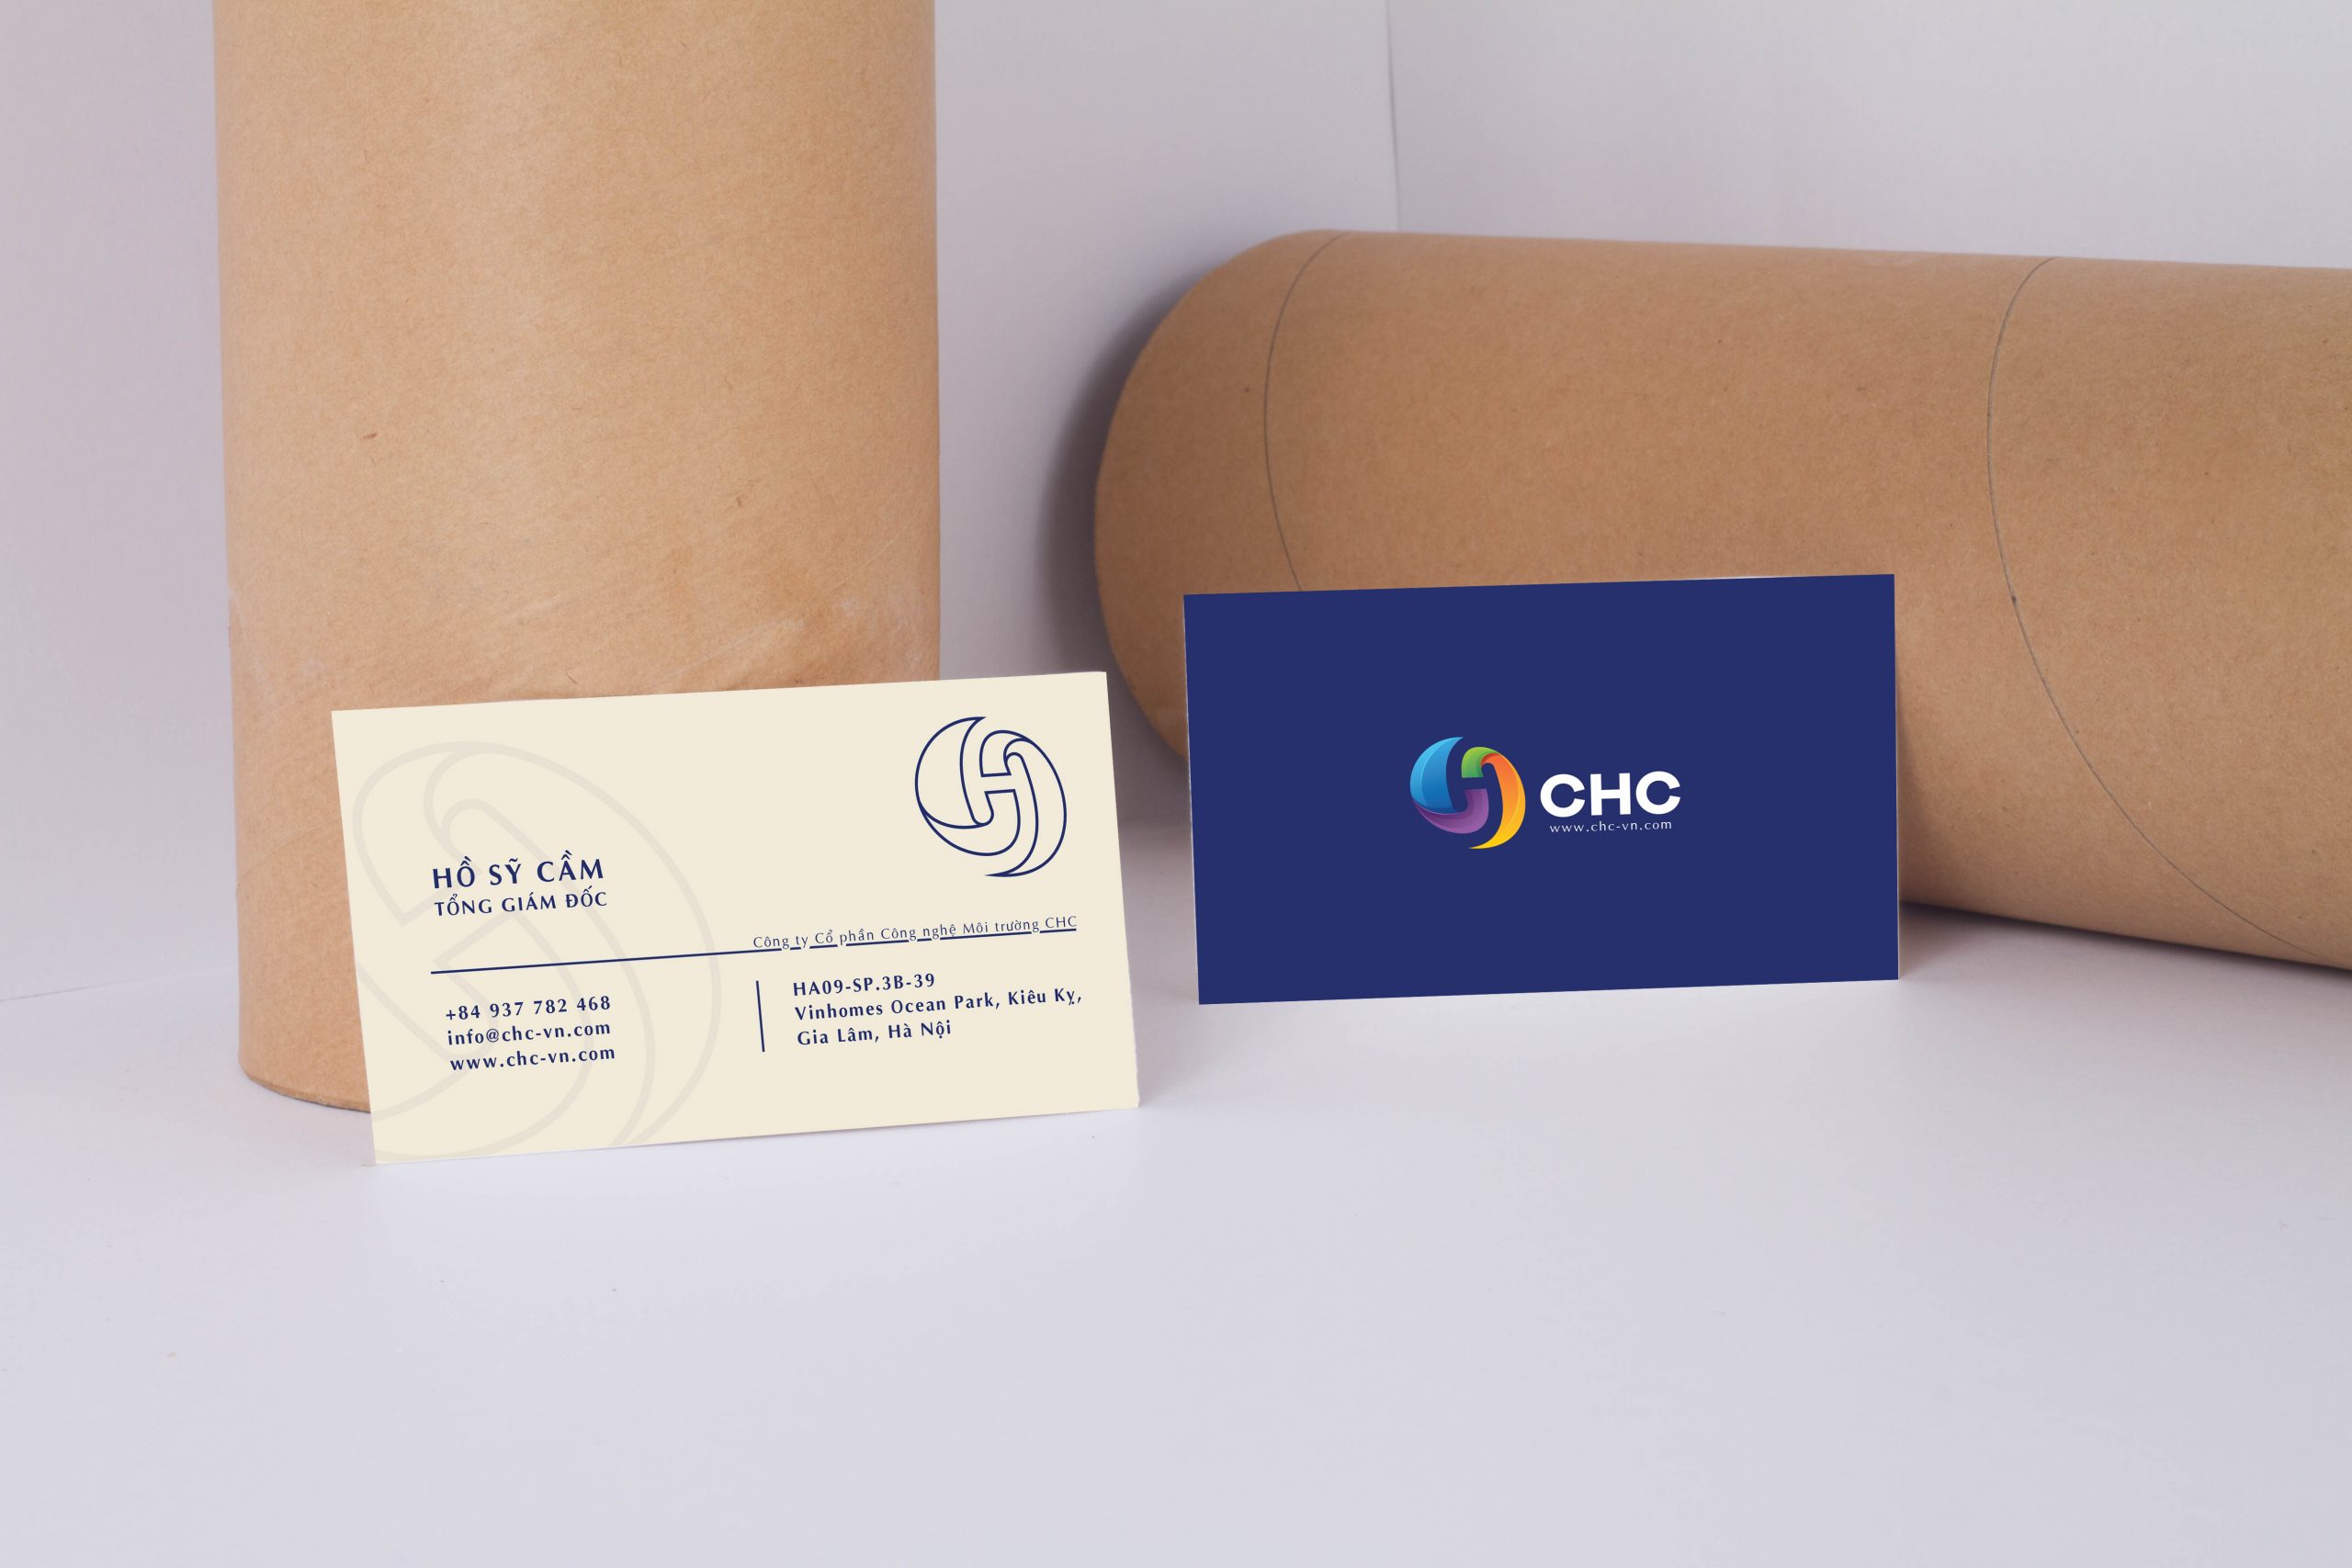 CHC card